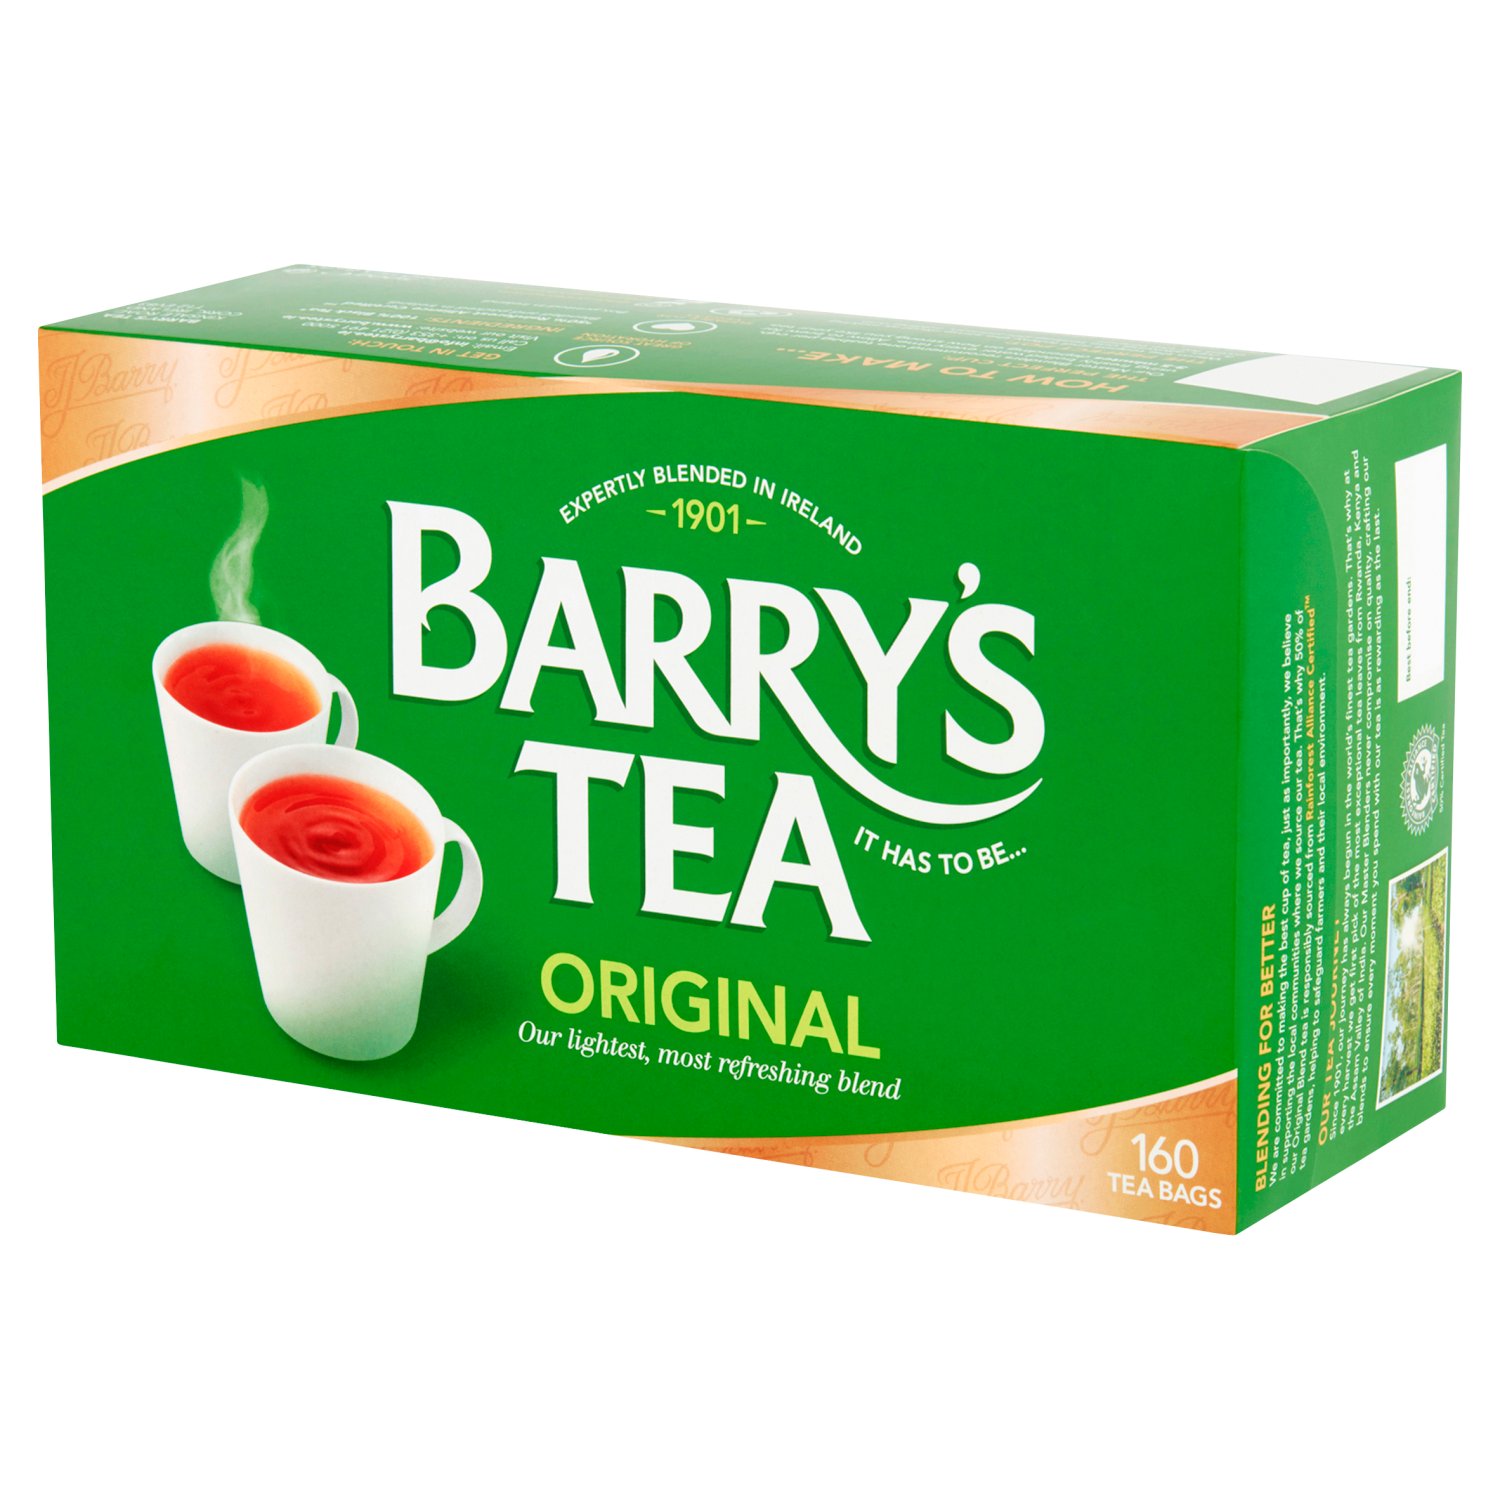 Barry's Original Blend Tea 160 Pack (500 g)